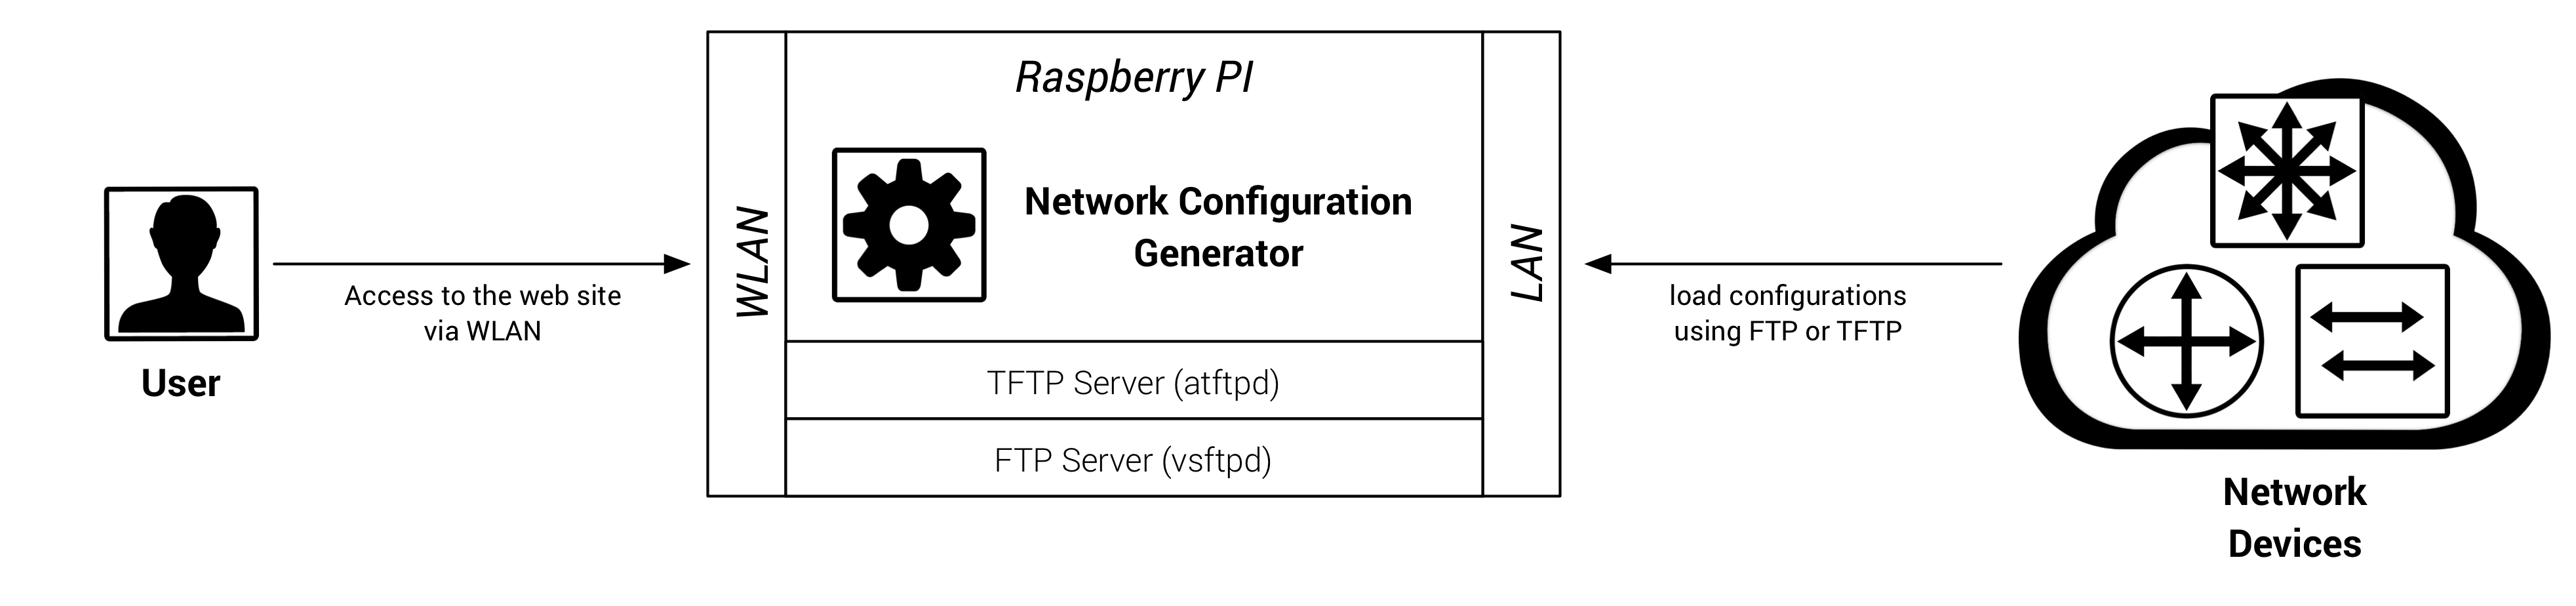 configure raspberry pi xscreensaver